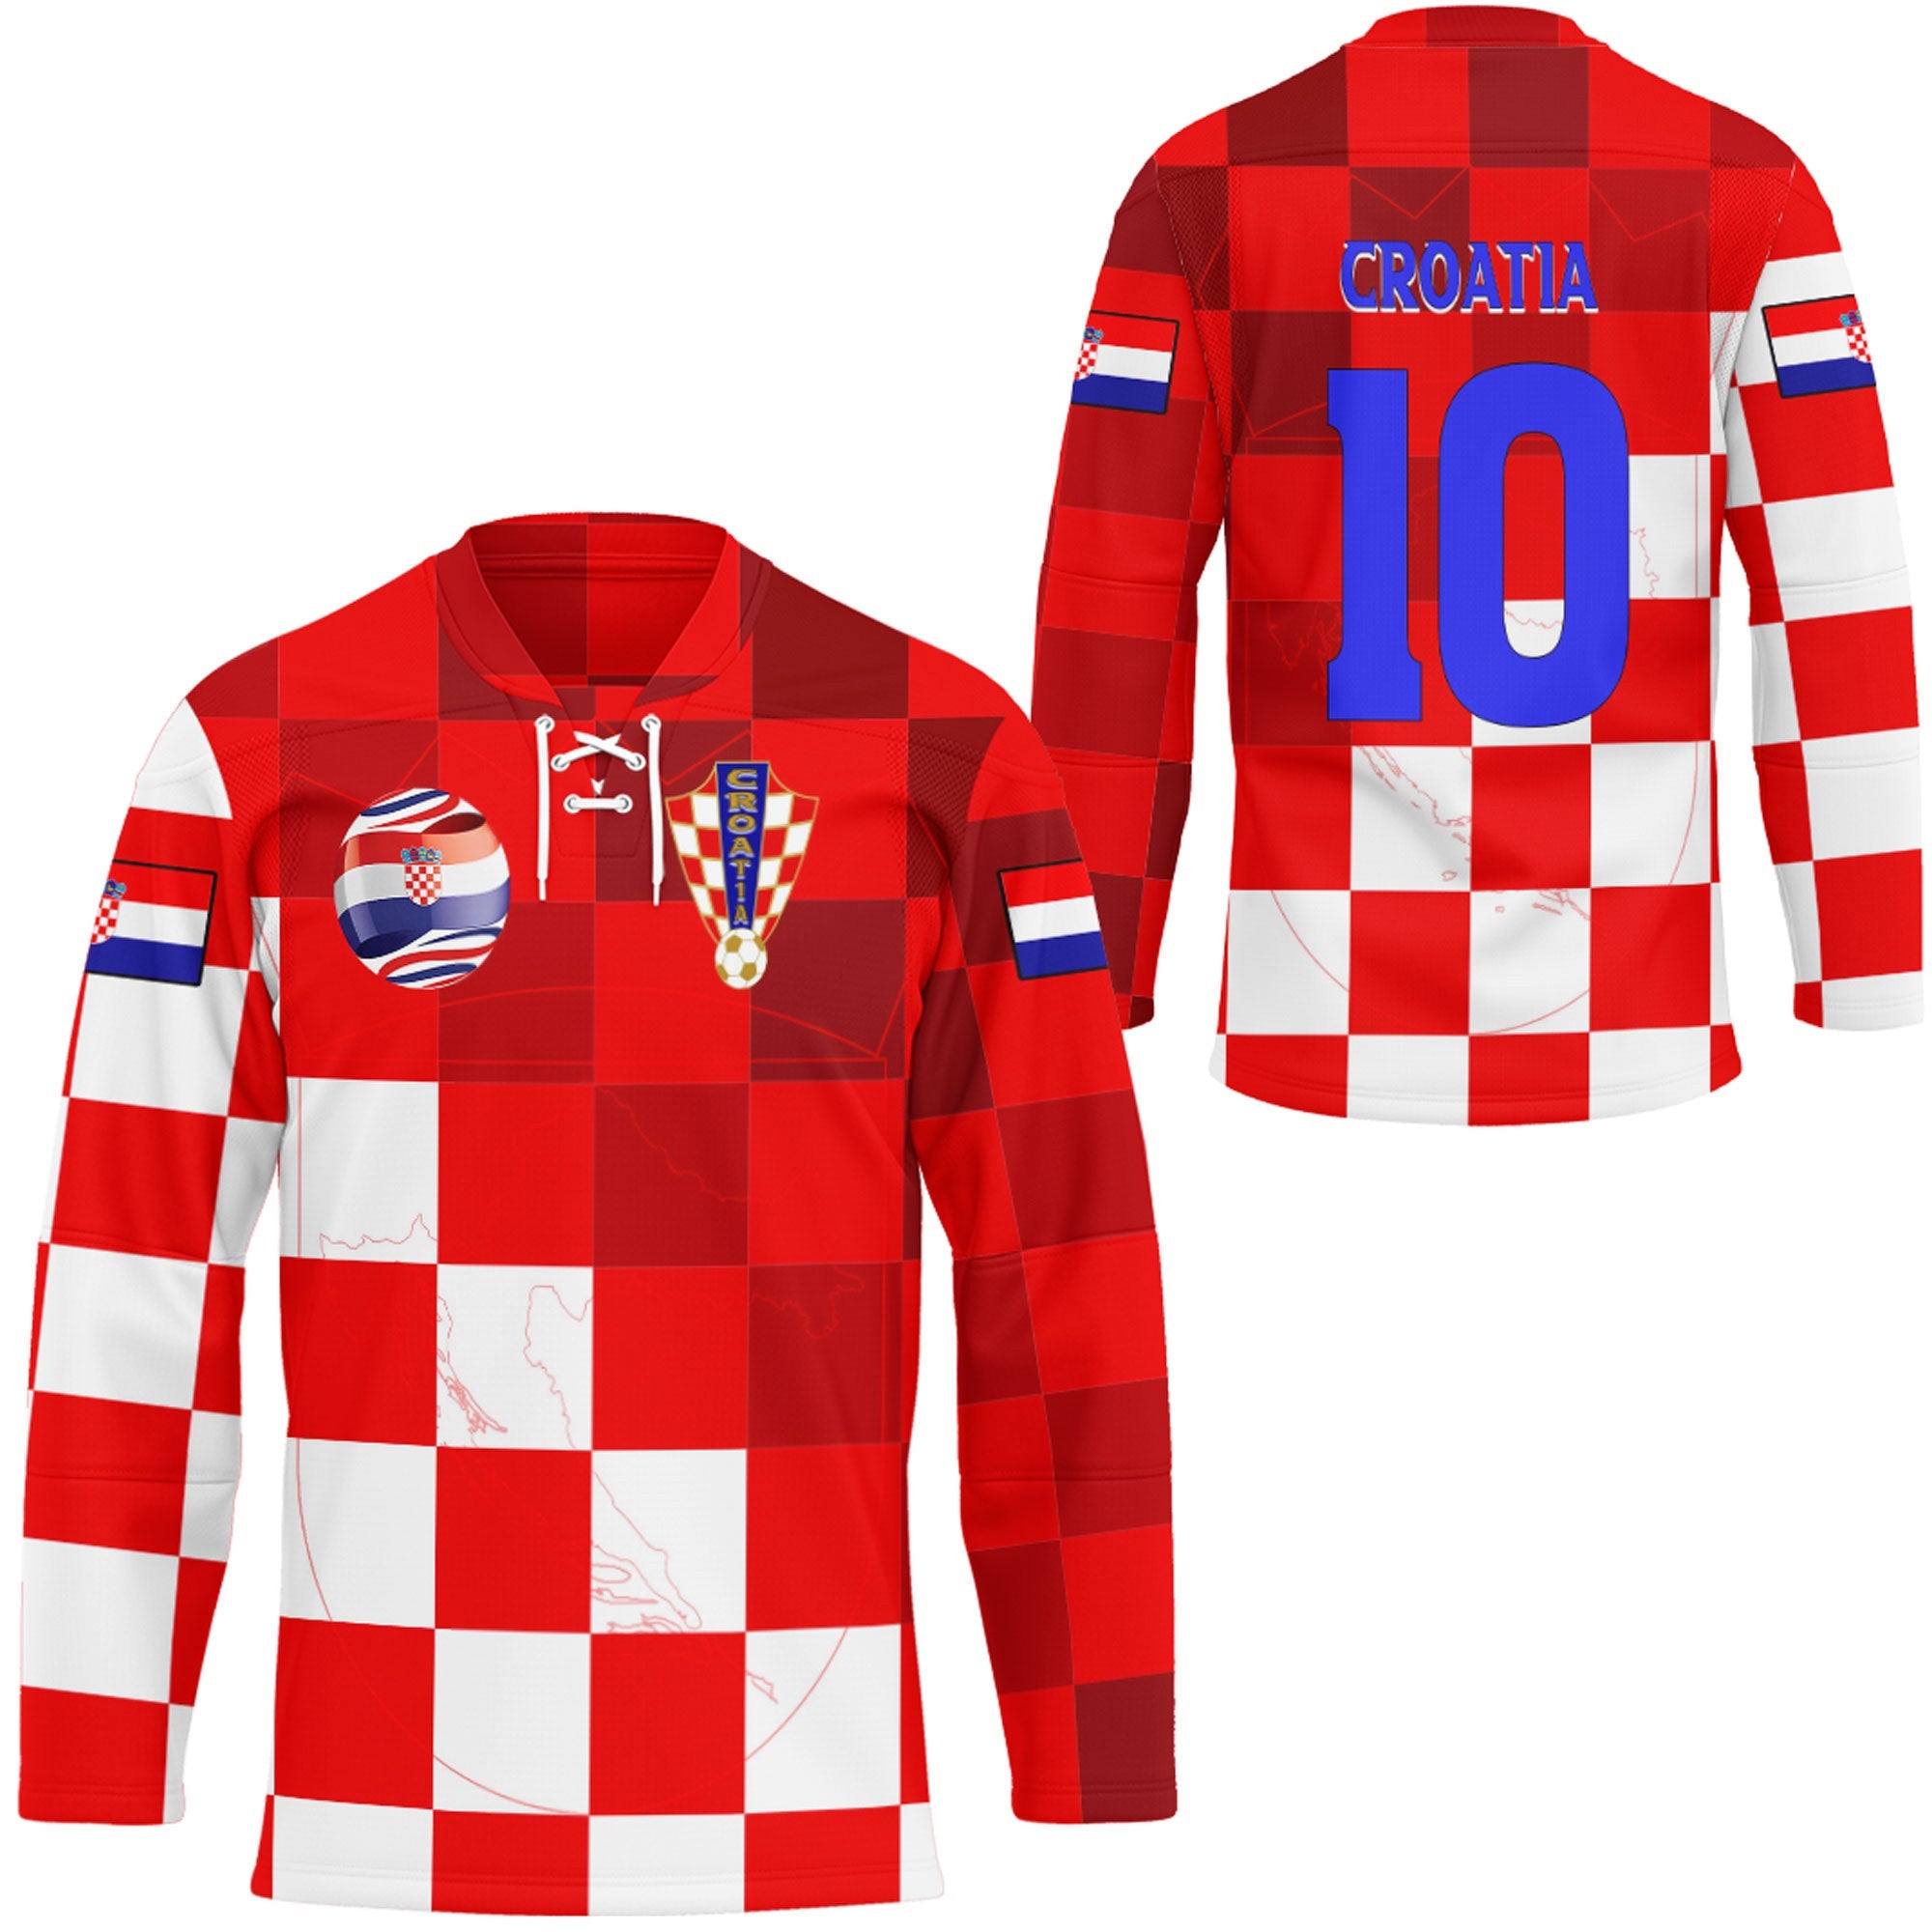 croatia-soccer-style-hockey-jersey